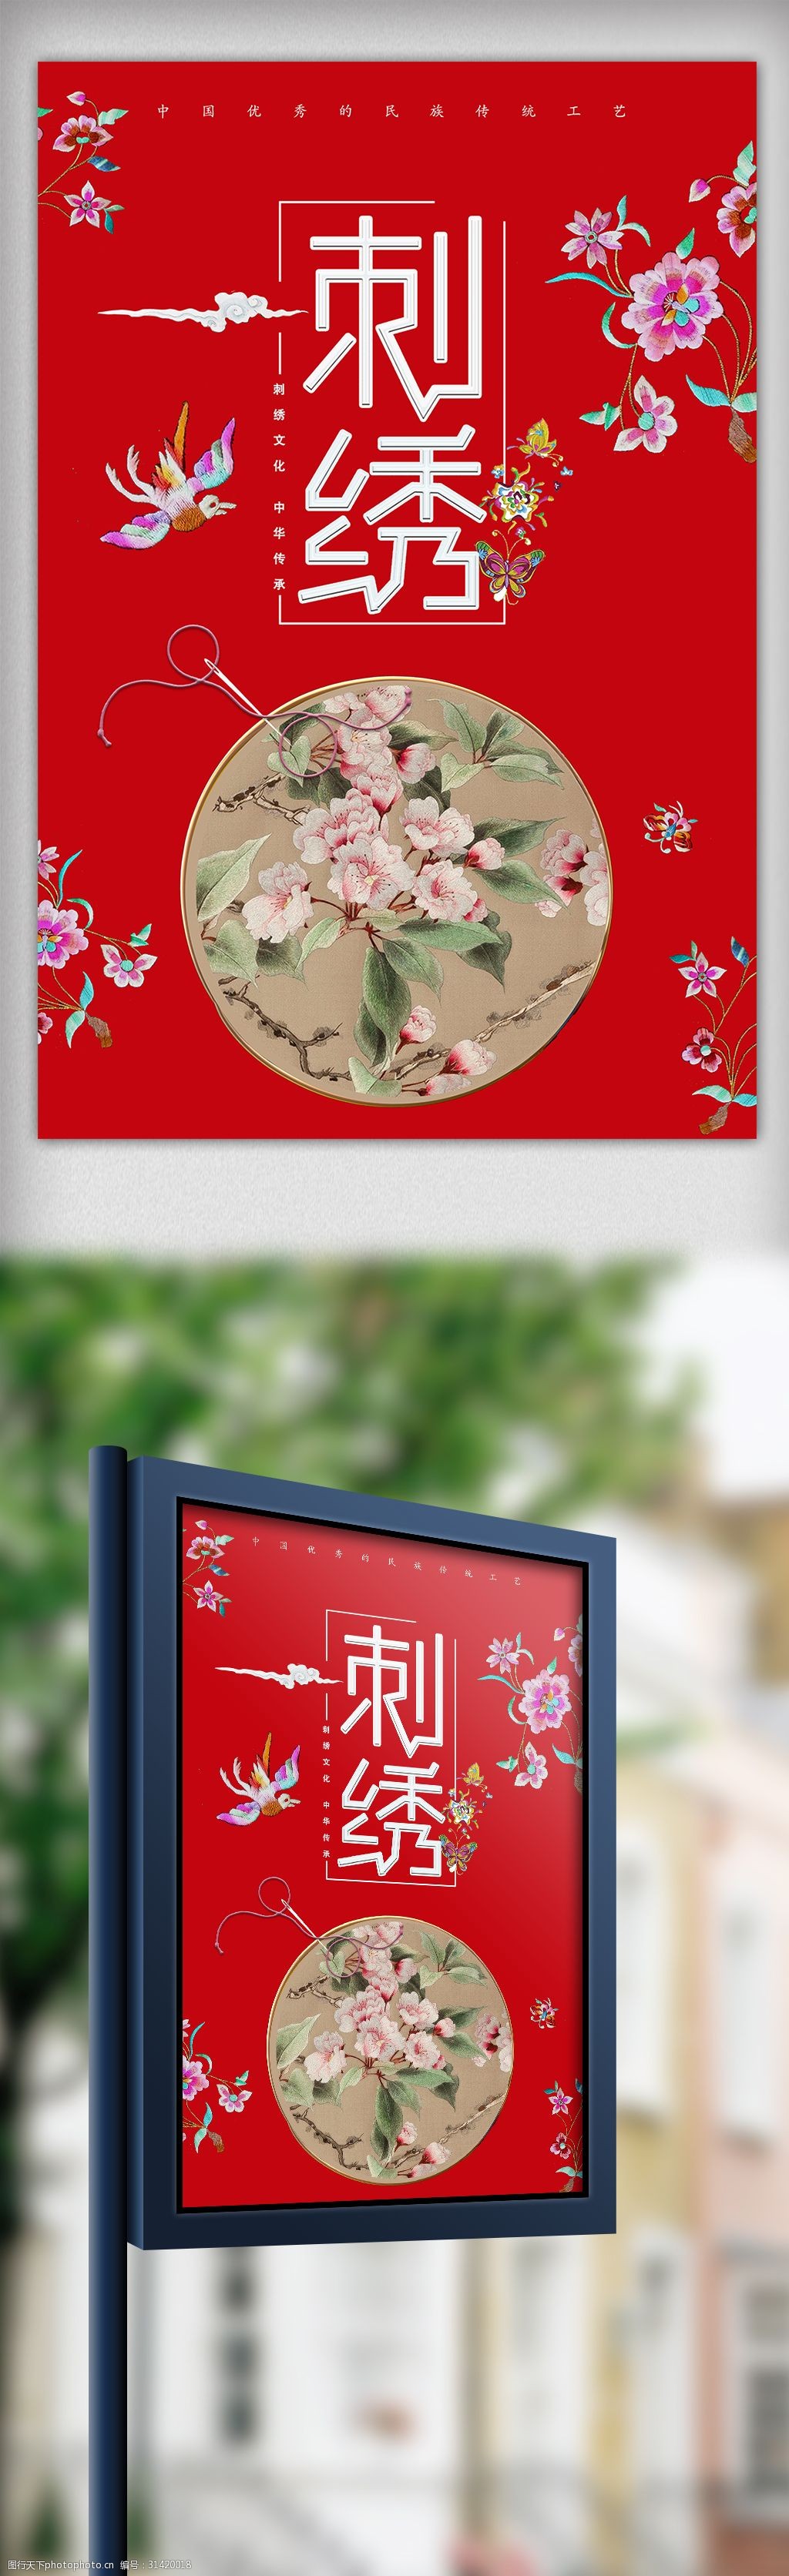 关键词:刺绣中国优秀的民族传统工艺海报 美女 创意 宣传 设计 广告